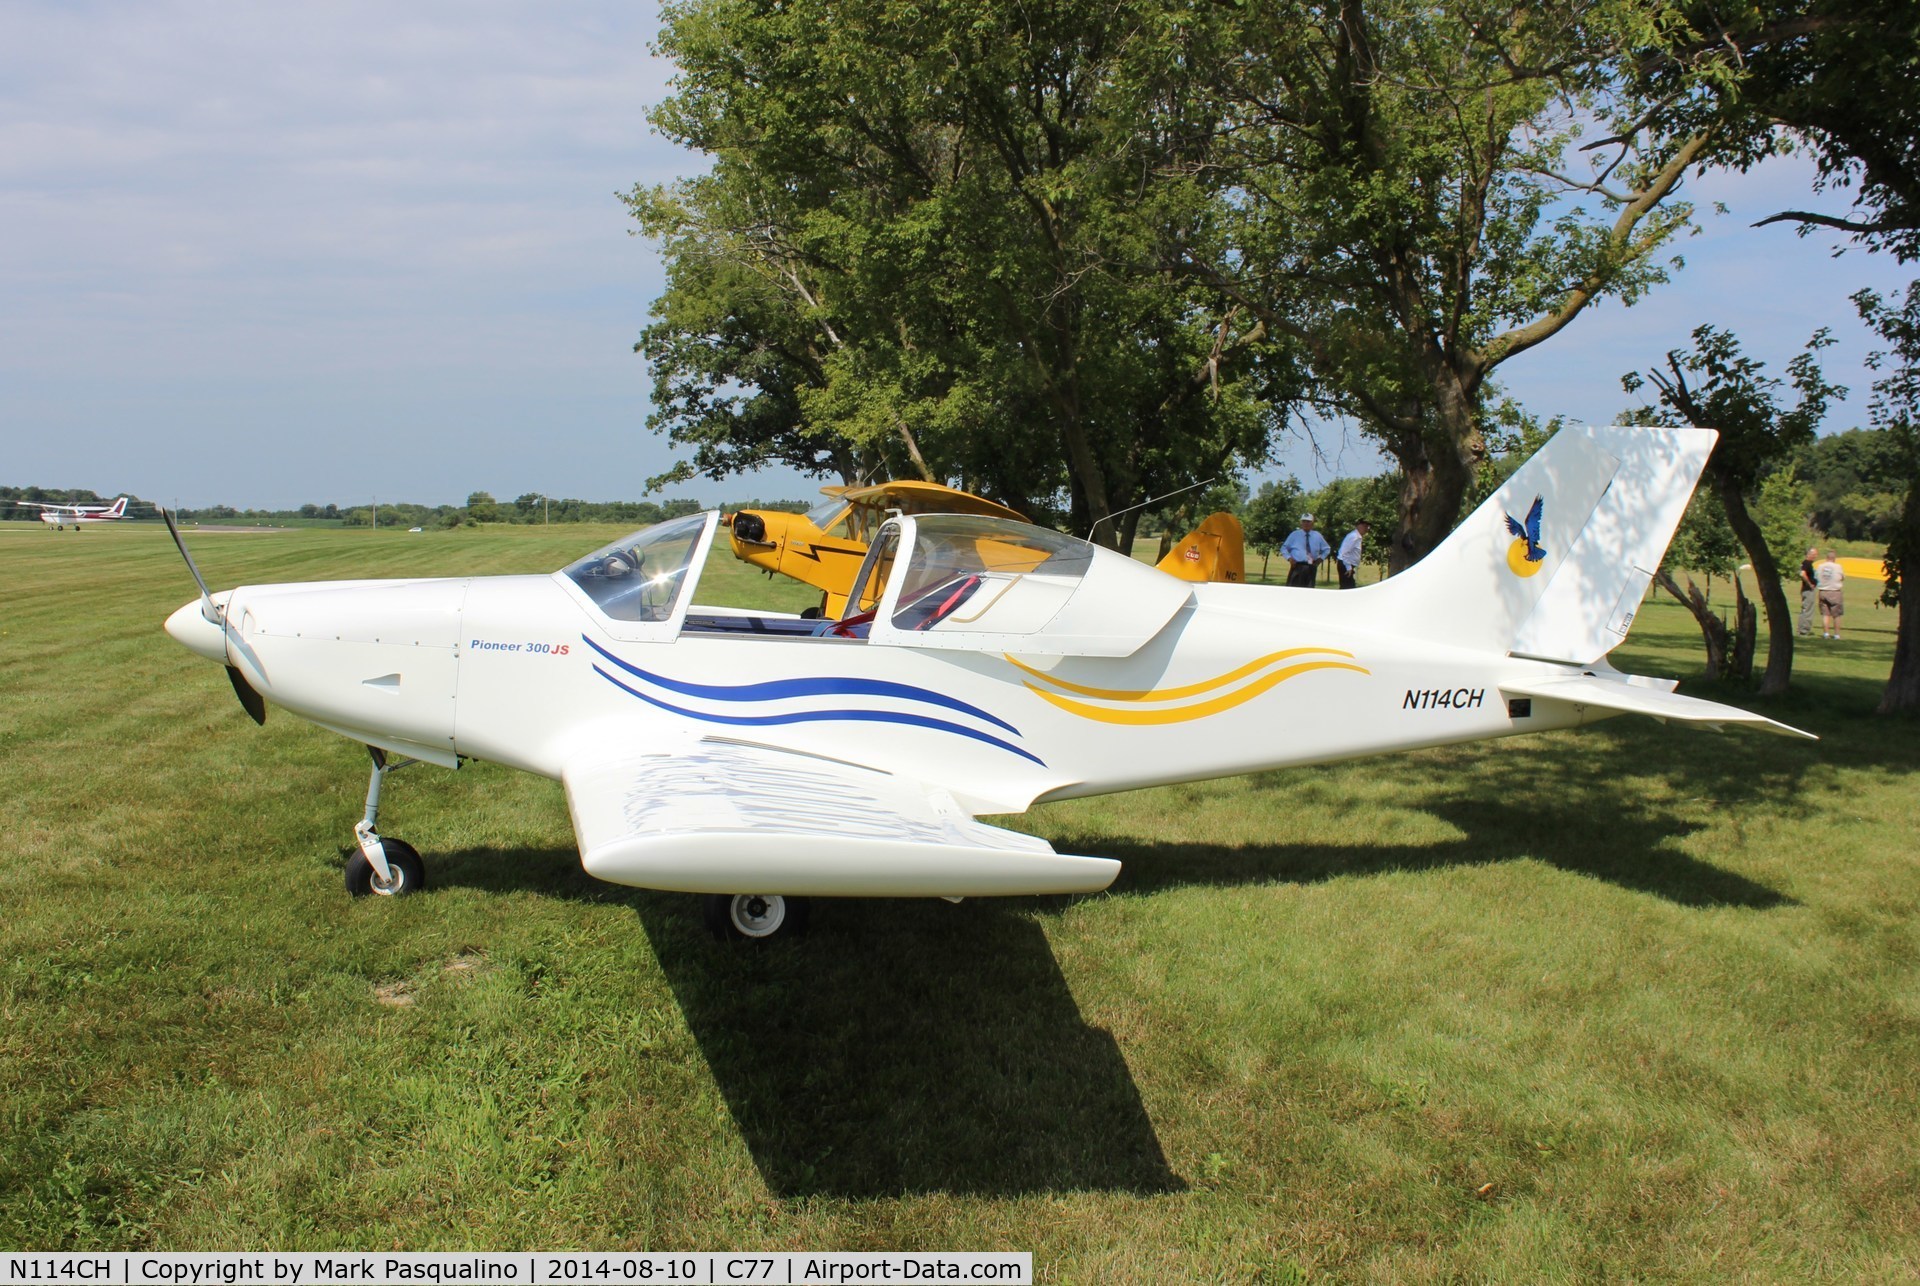 N114CH, 2004 Alpi Aviation Pioneer 300 JS C/N 87, Pioneer 300 JS